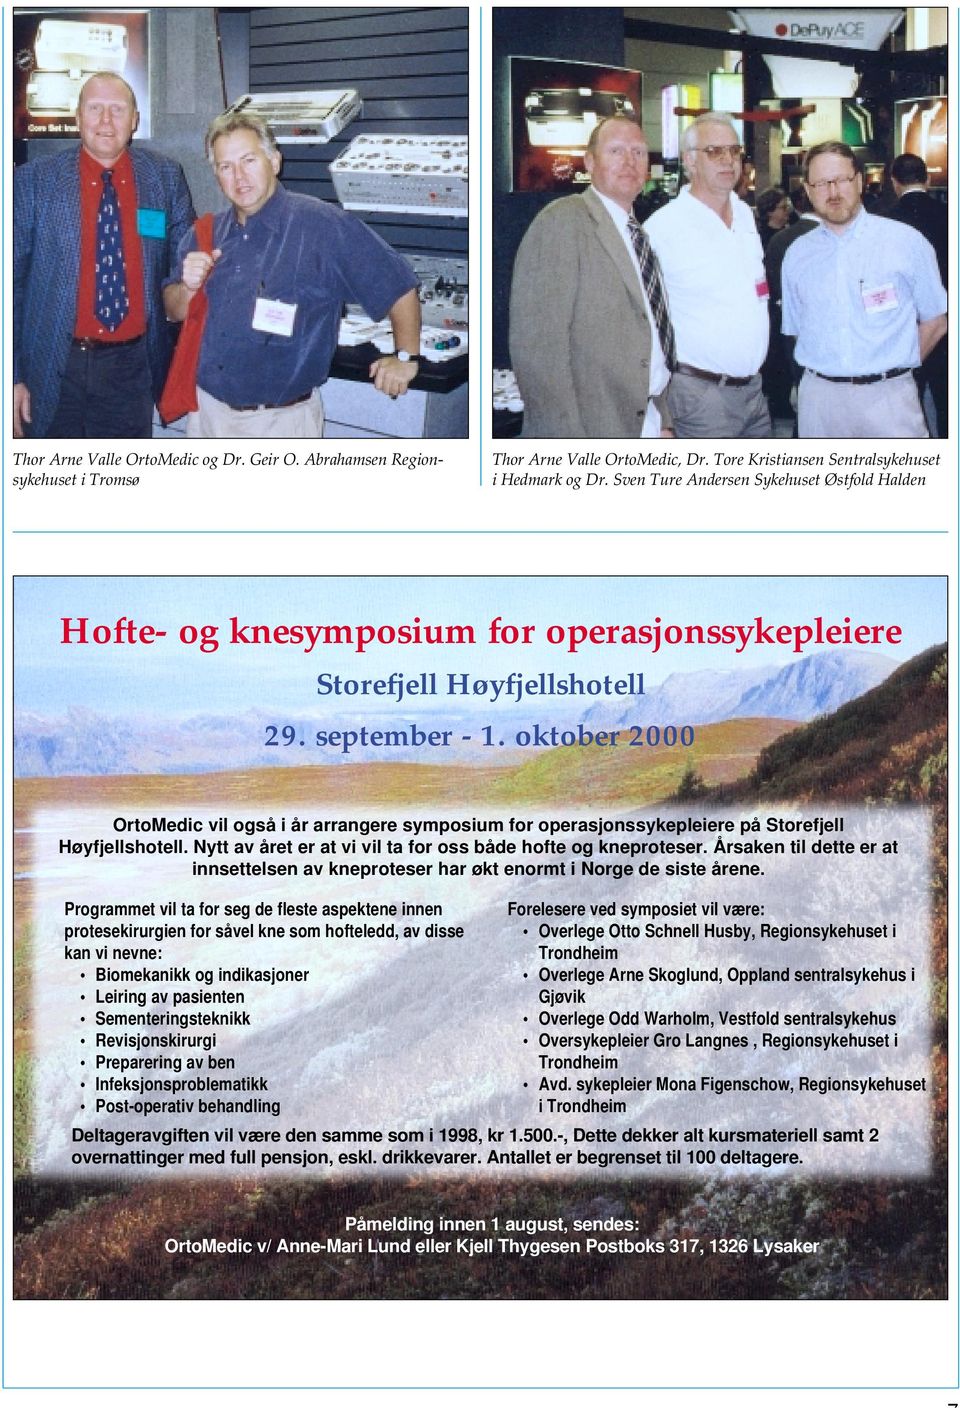 oktober 2000 OrtoMedic vil også i år arrangere symposium for operasjonssykepleiere på Storefjell Høyfjellshotell. Nytt av året er at vi vil ta for oss både hofte og kneproteser.